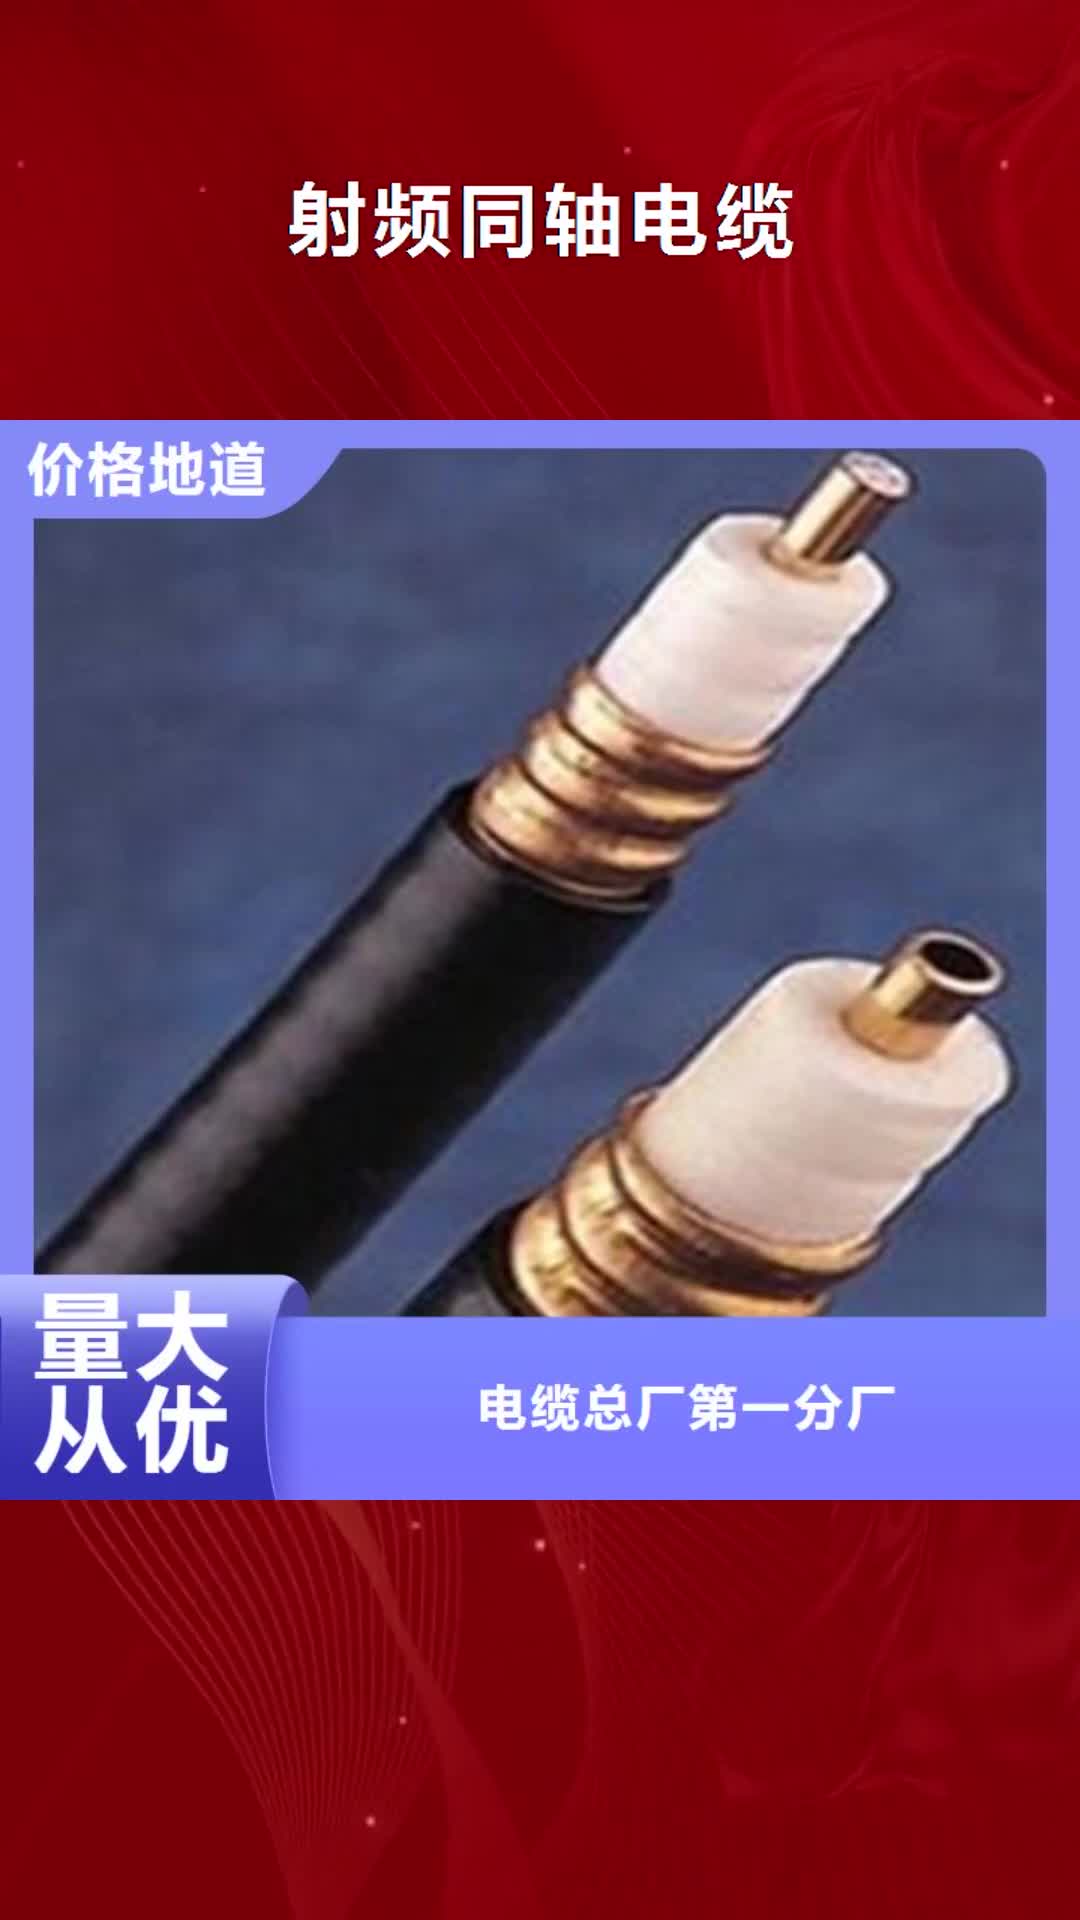 上海【射频同轴电缆】 电力电缆专业供货品质管控